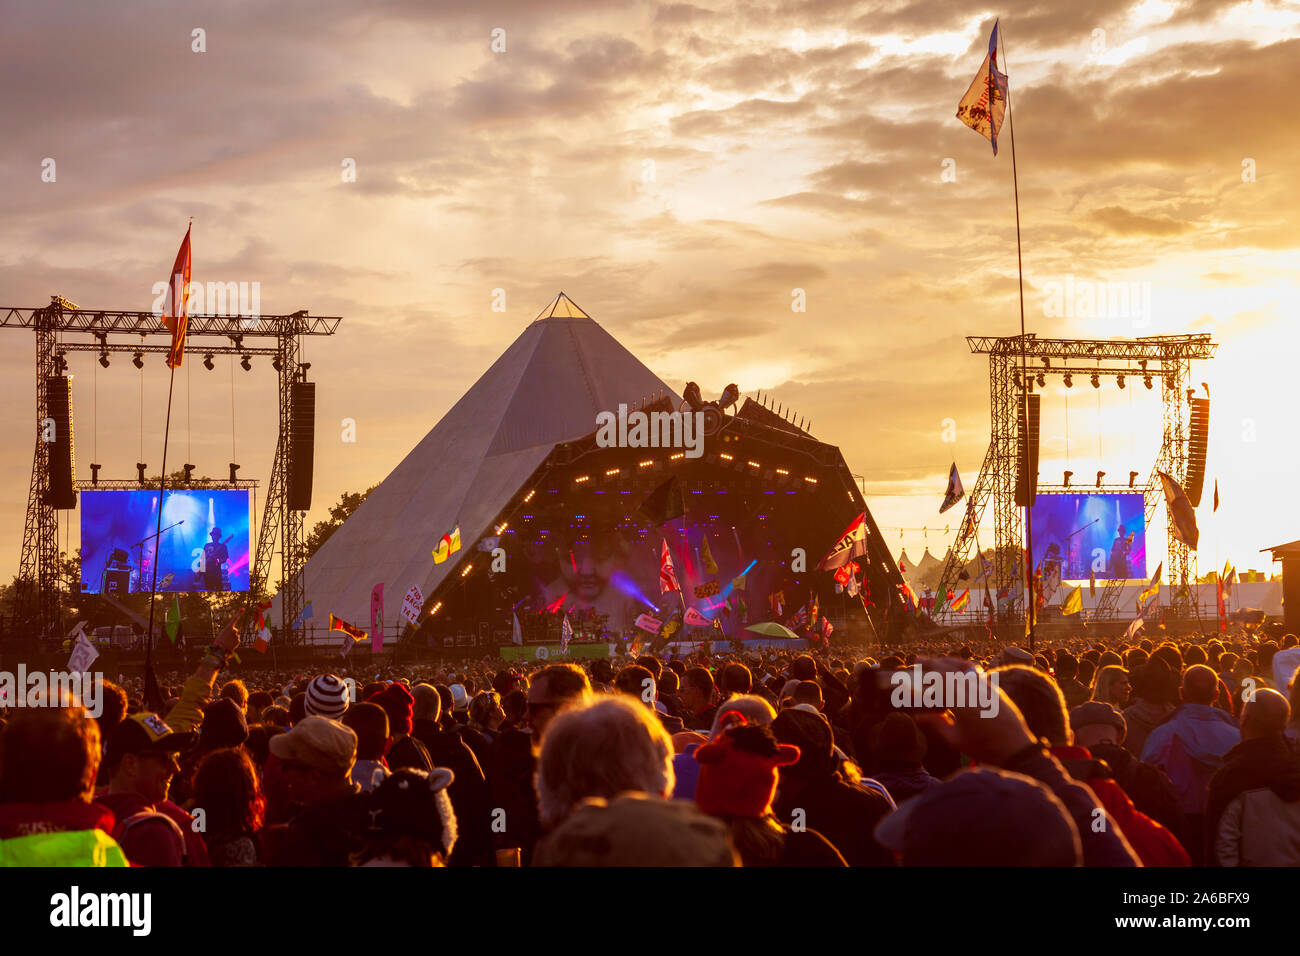 GLASTONBURY, Großbritannien - 27 Juni 2014: große Menschenmenge beobachten Ellenbogen spielen auf dem Glastonbury Festival Pyramide Stadium bei Sonnenuntergang Stockfoto